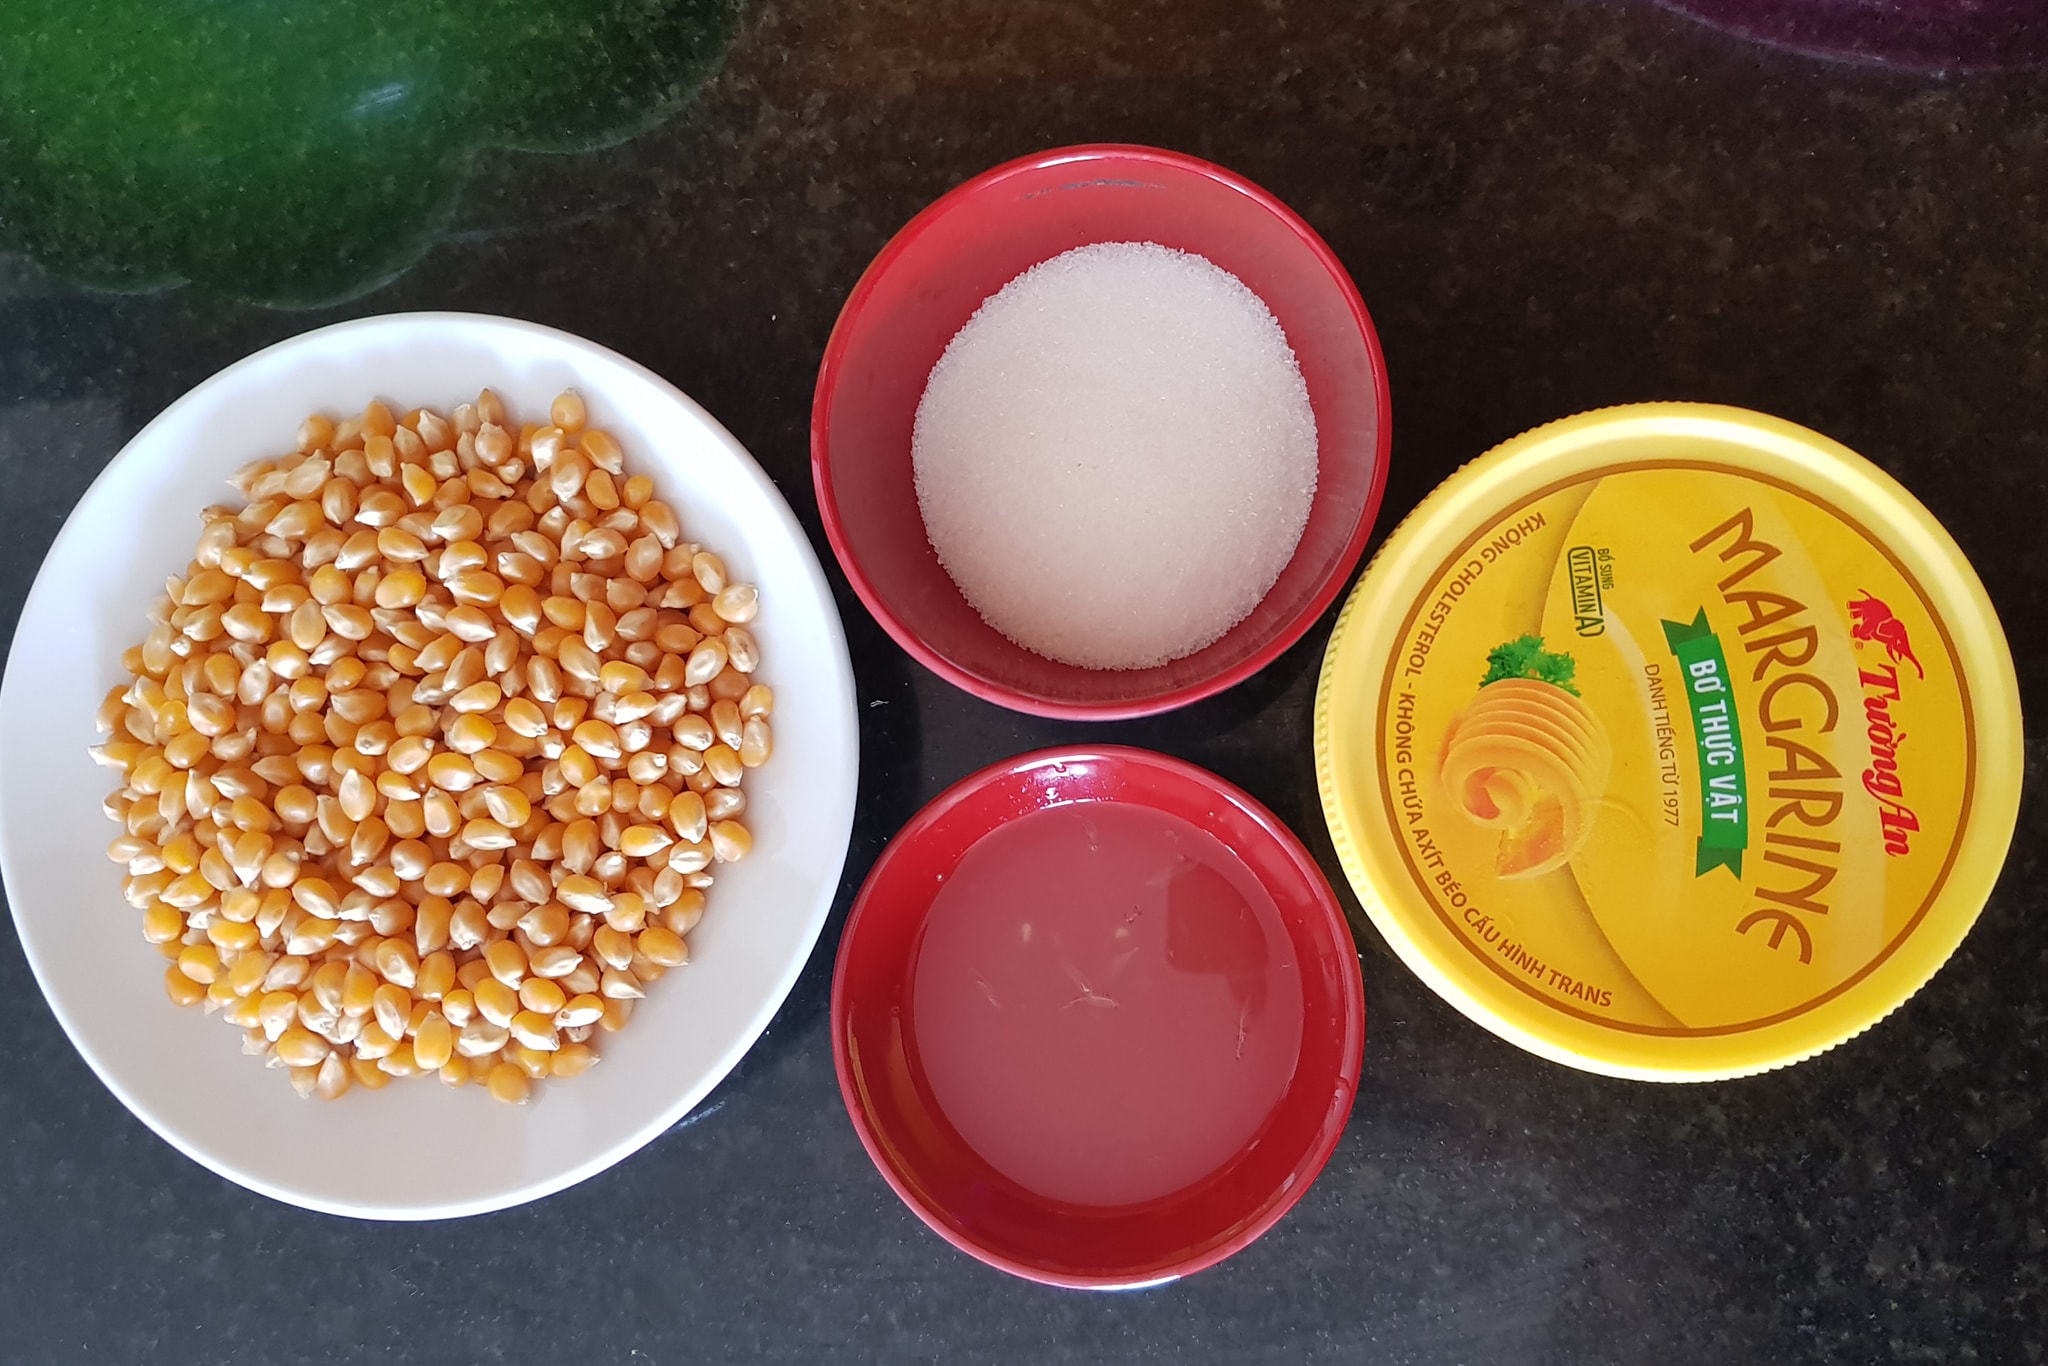 bap xao bo2 - Cách làm Bắp xào bơ thơm ngon, hấp dẫn cực đơn giản tại nhà